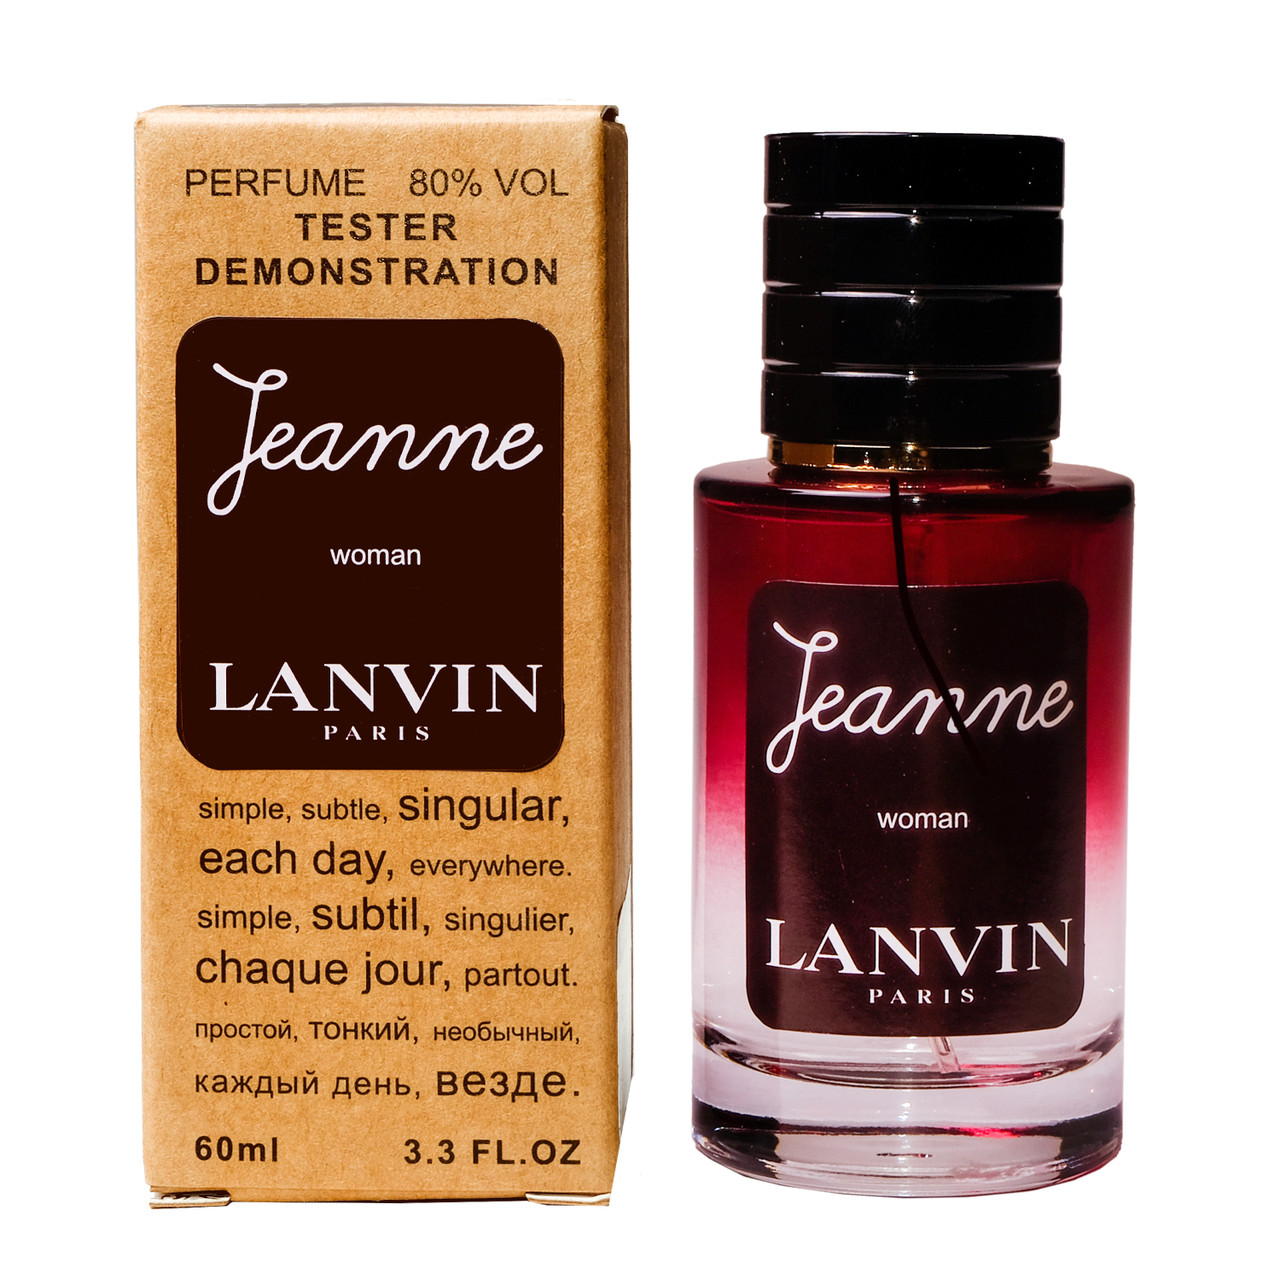 Lanvin Jeanne Lanvin TESTER LUX, 60 мл